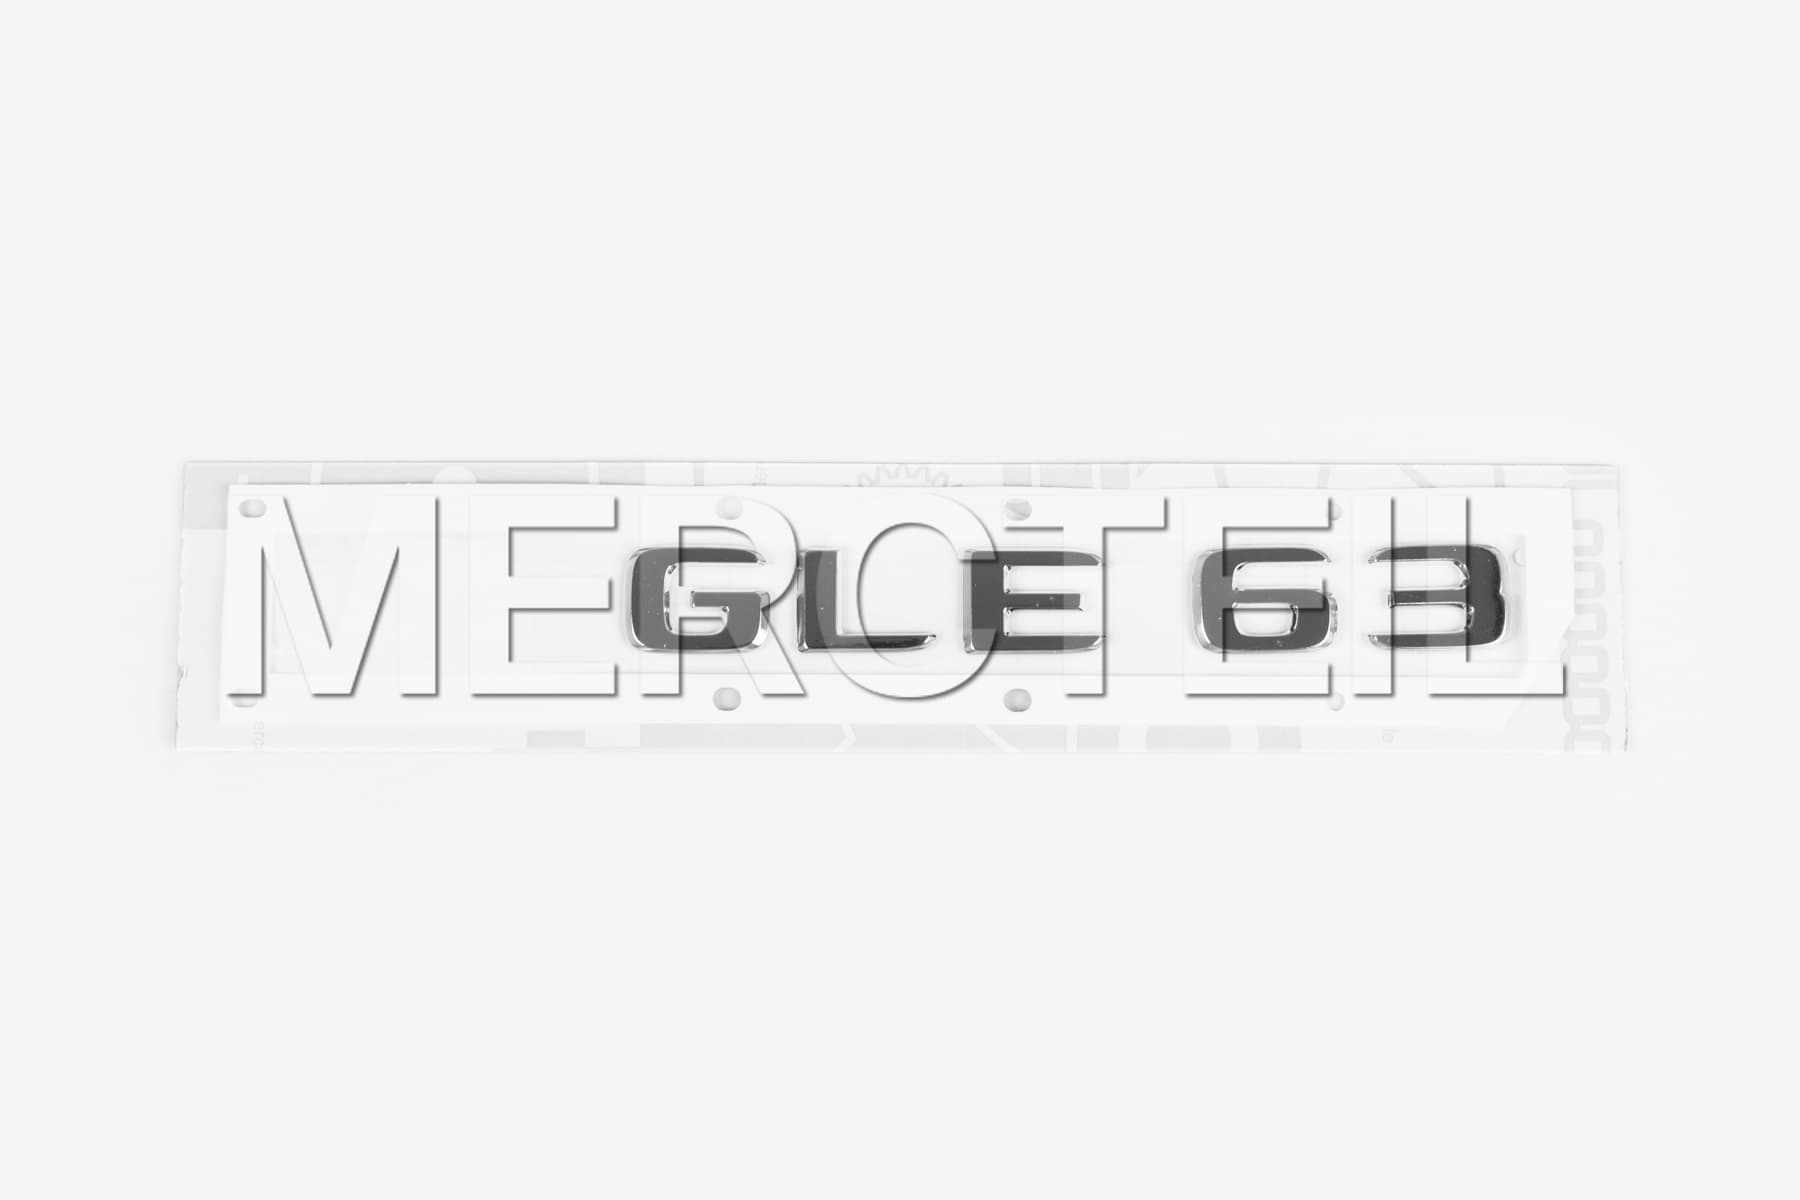 GLE-Klasse Coupe GLE63 AMG  Model Logo 167 Original Mercedes-AMG (part number: A1678175800)